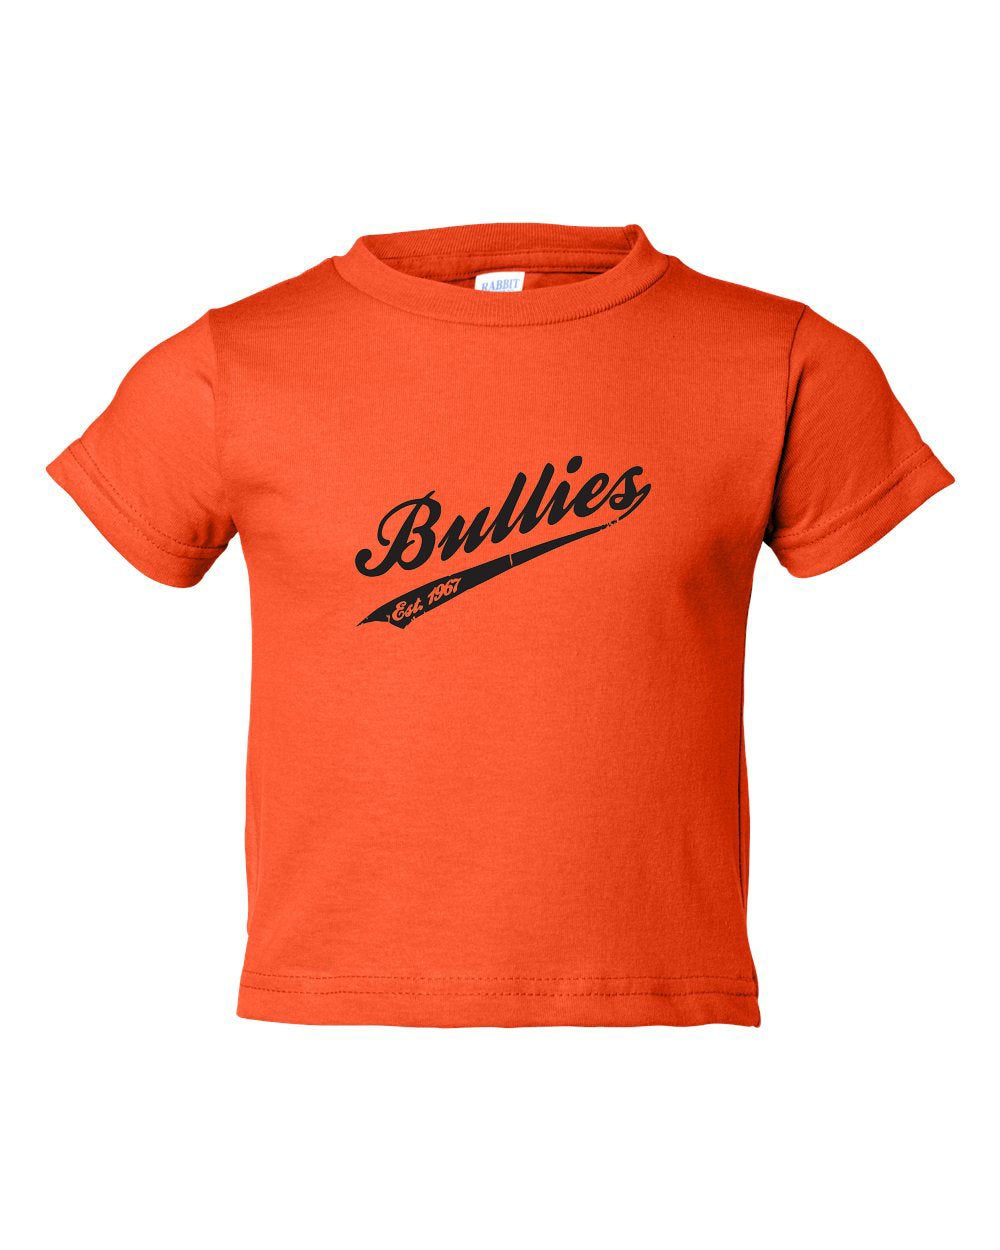 Vintage Bullies TODDLER T-Shirt